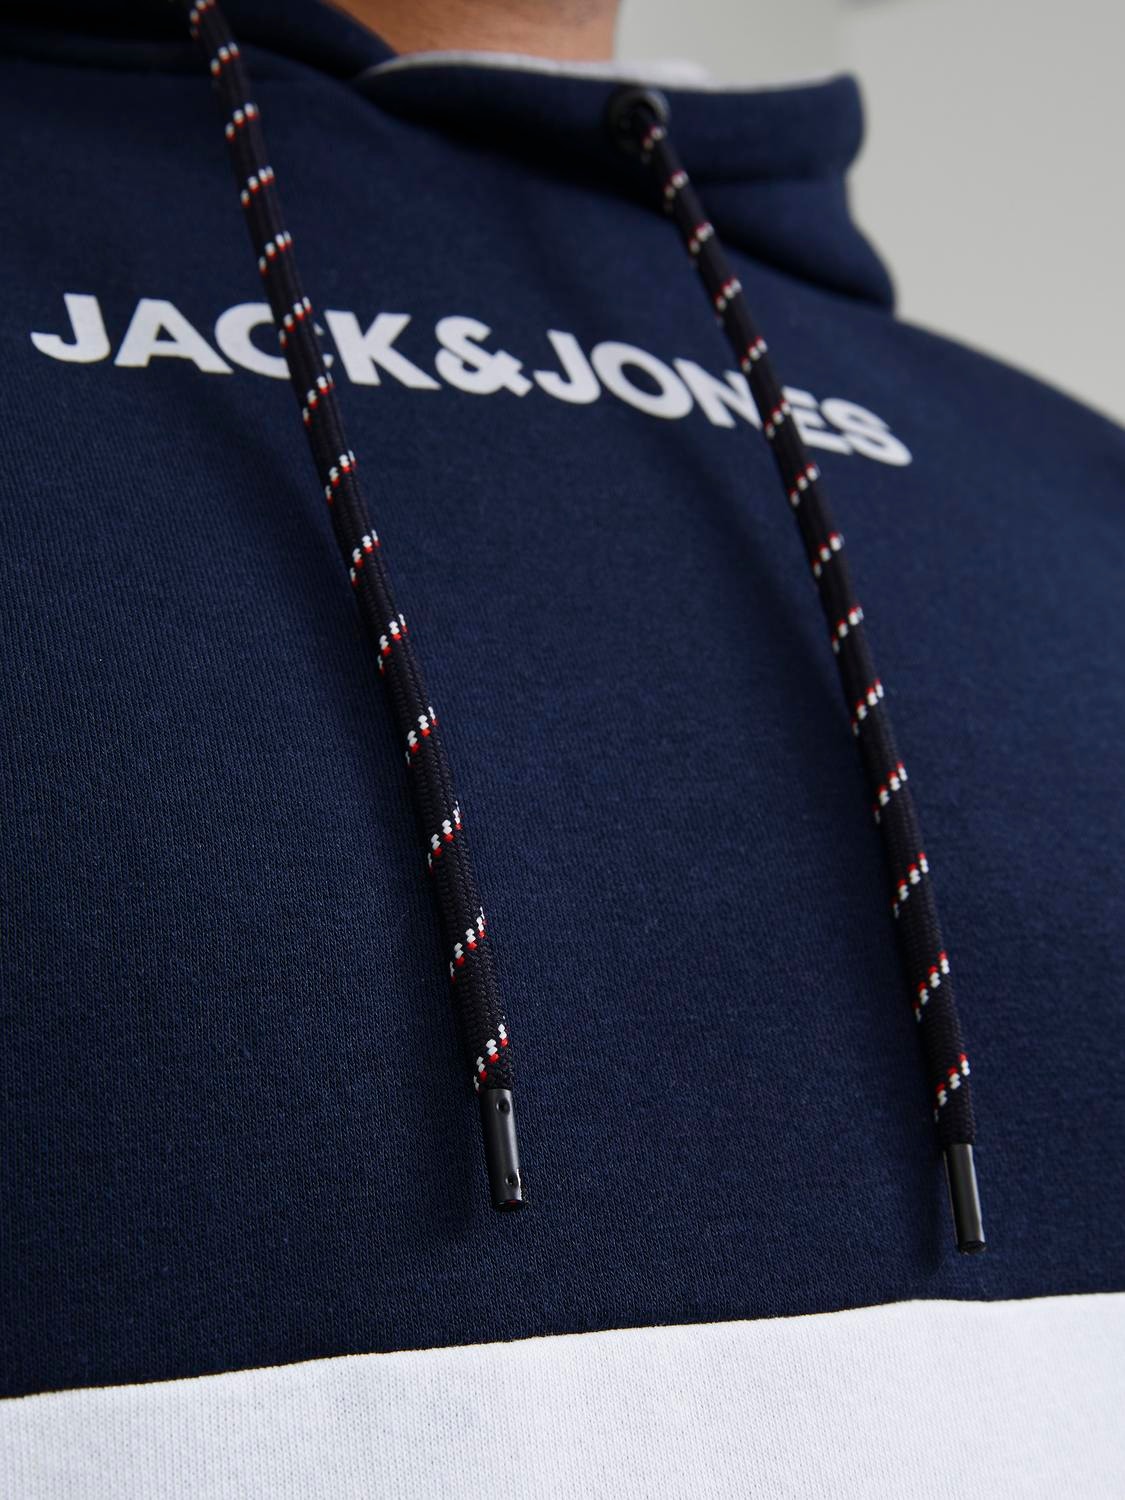 Jack & Jones Plus Size Hoodie Bloco de Cor -Navy Blazer - 12236900